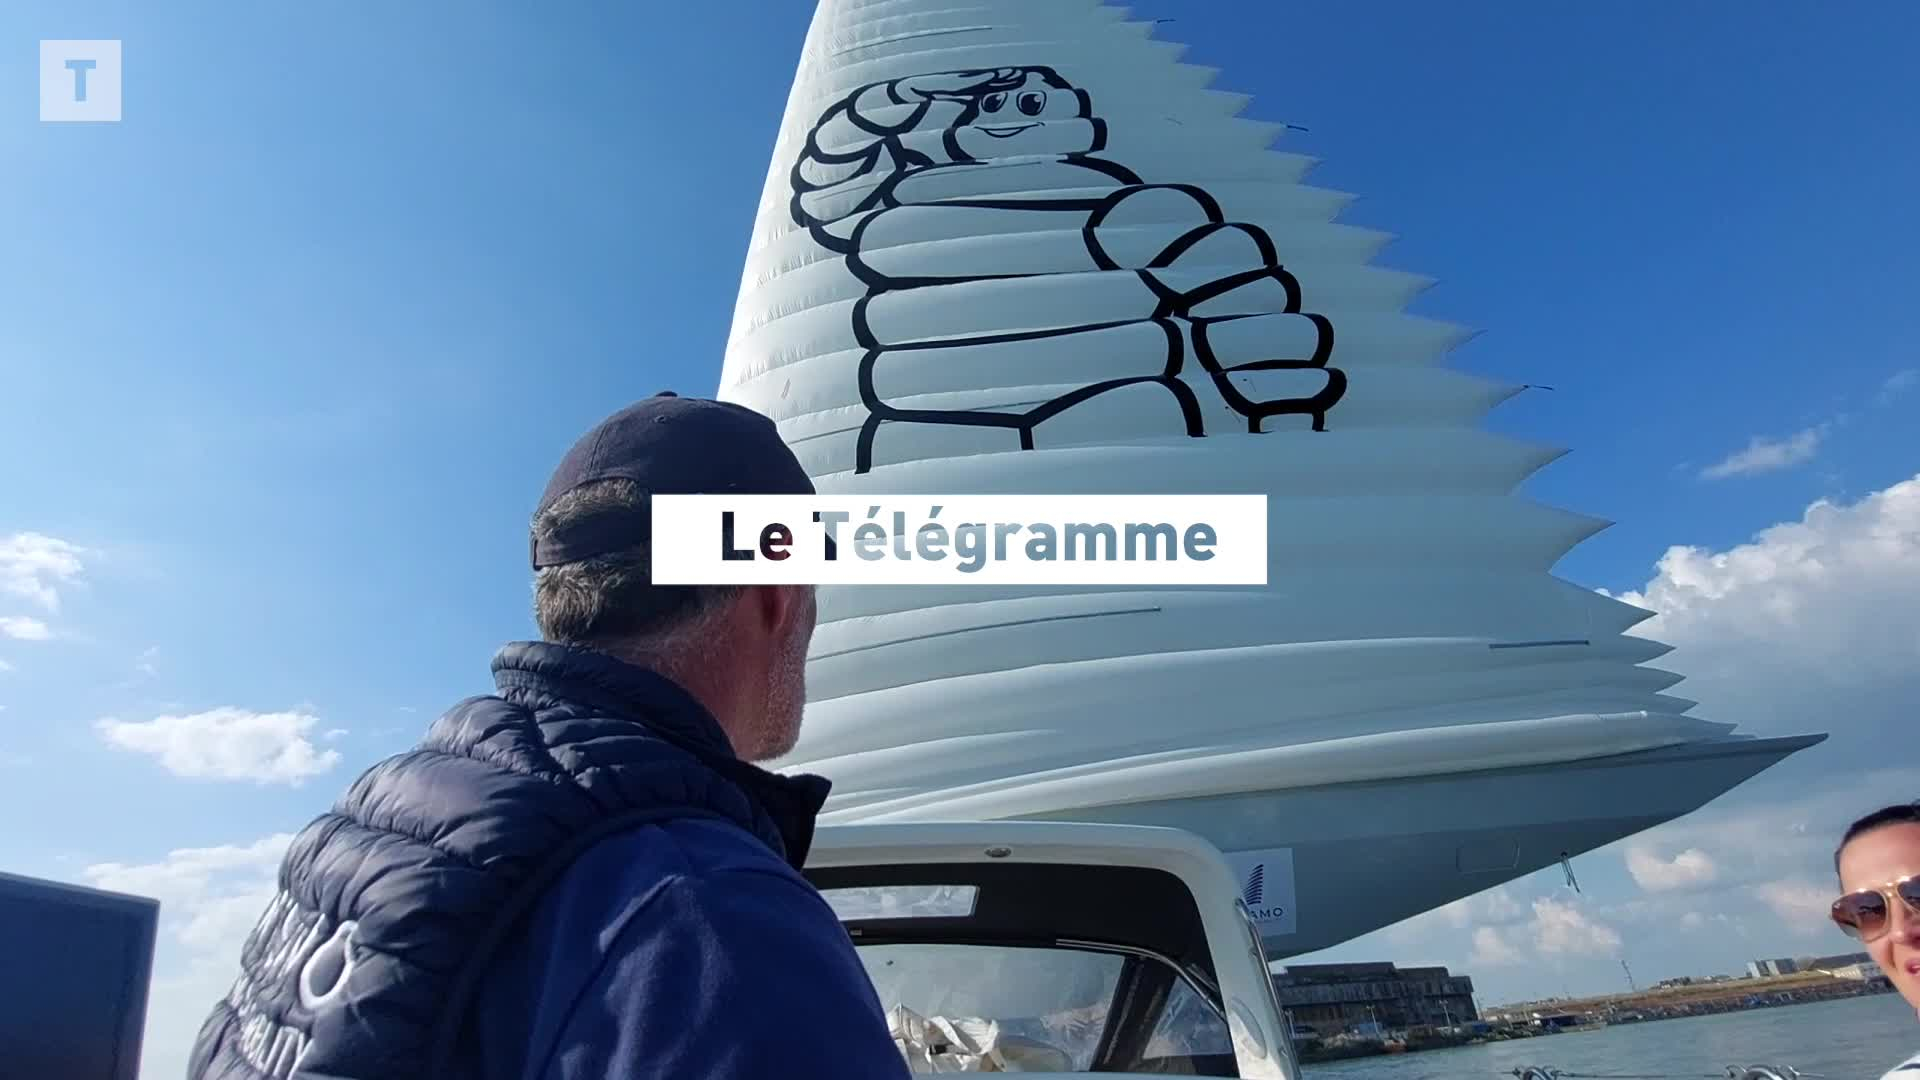 Wisamo La voile gonflable destinée à décarboner le transport maritime (Bonjour Bretagne)